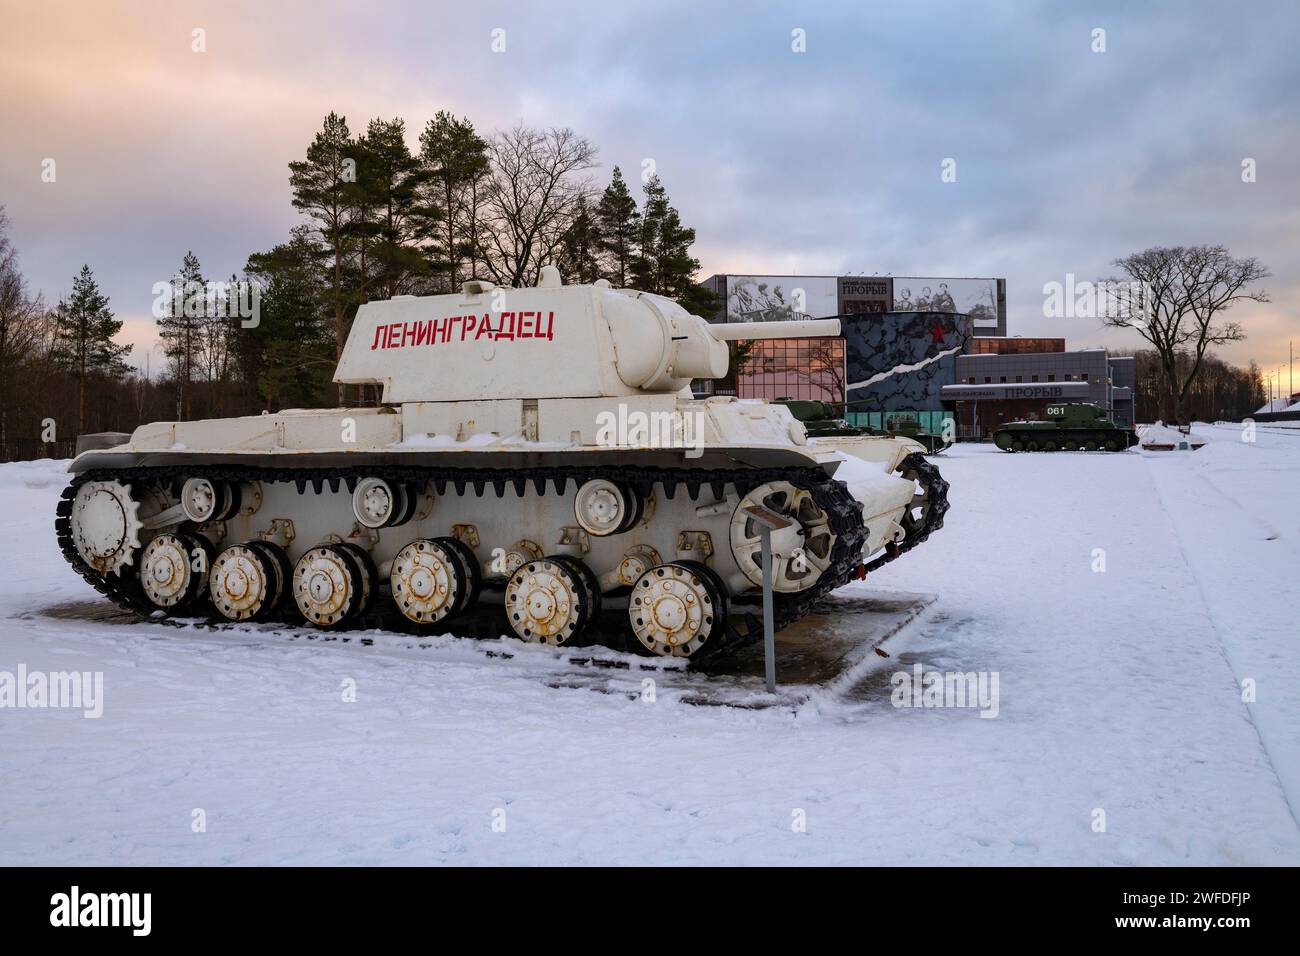 KIROVSK, RUSSIA - 18 DICEMBRE 2023: Carro armato pesante sovietico KV-1 "Leningradets" nella mostra di strada del museo "Breakthrough" in una mattina di dicembre Foto Stock